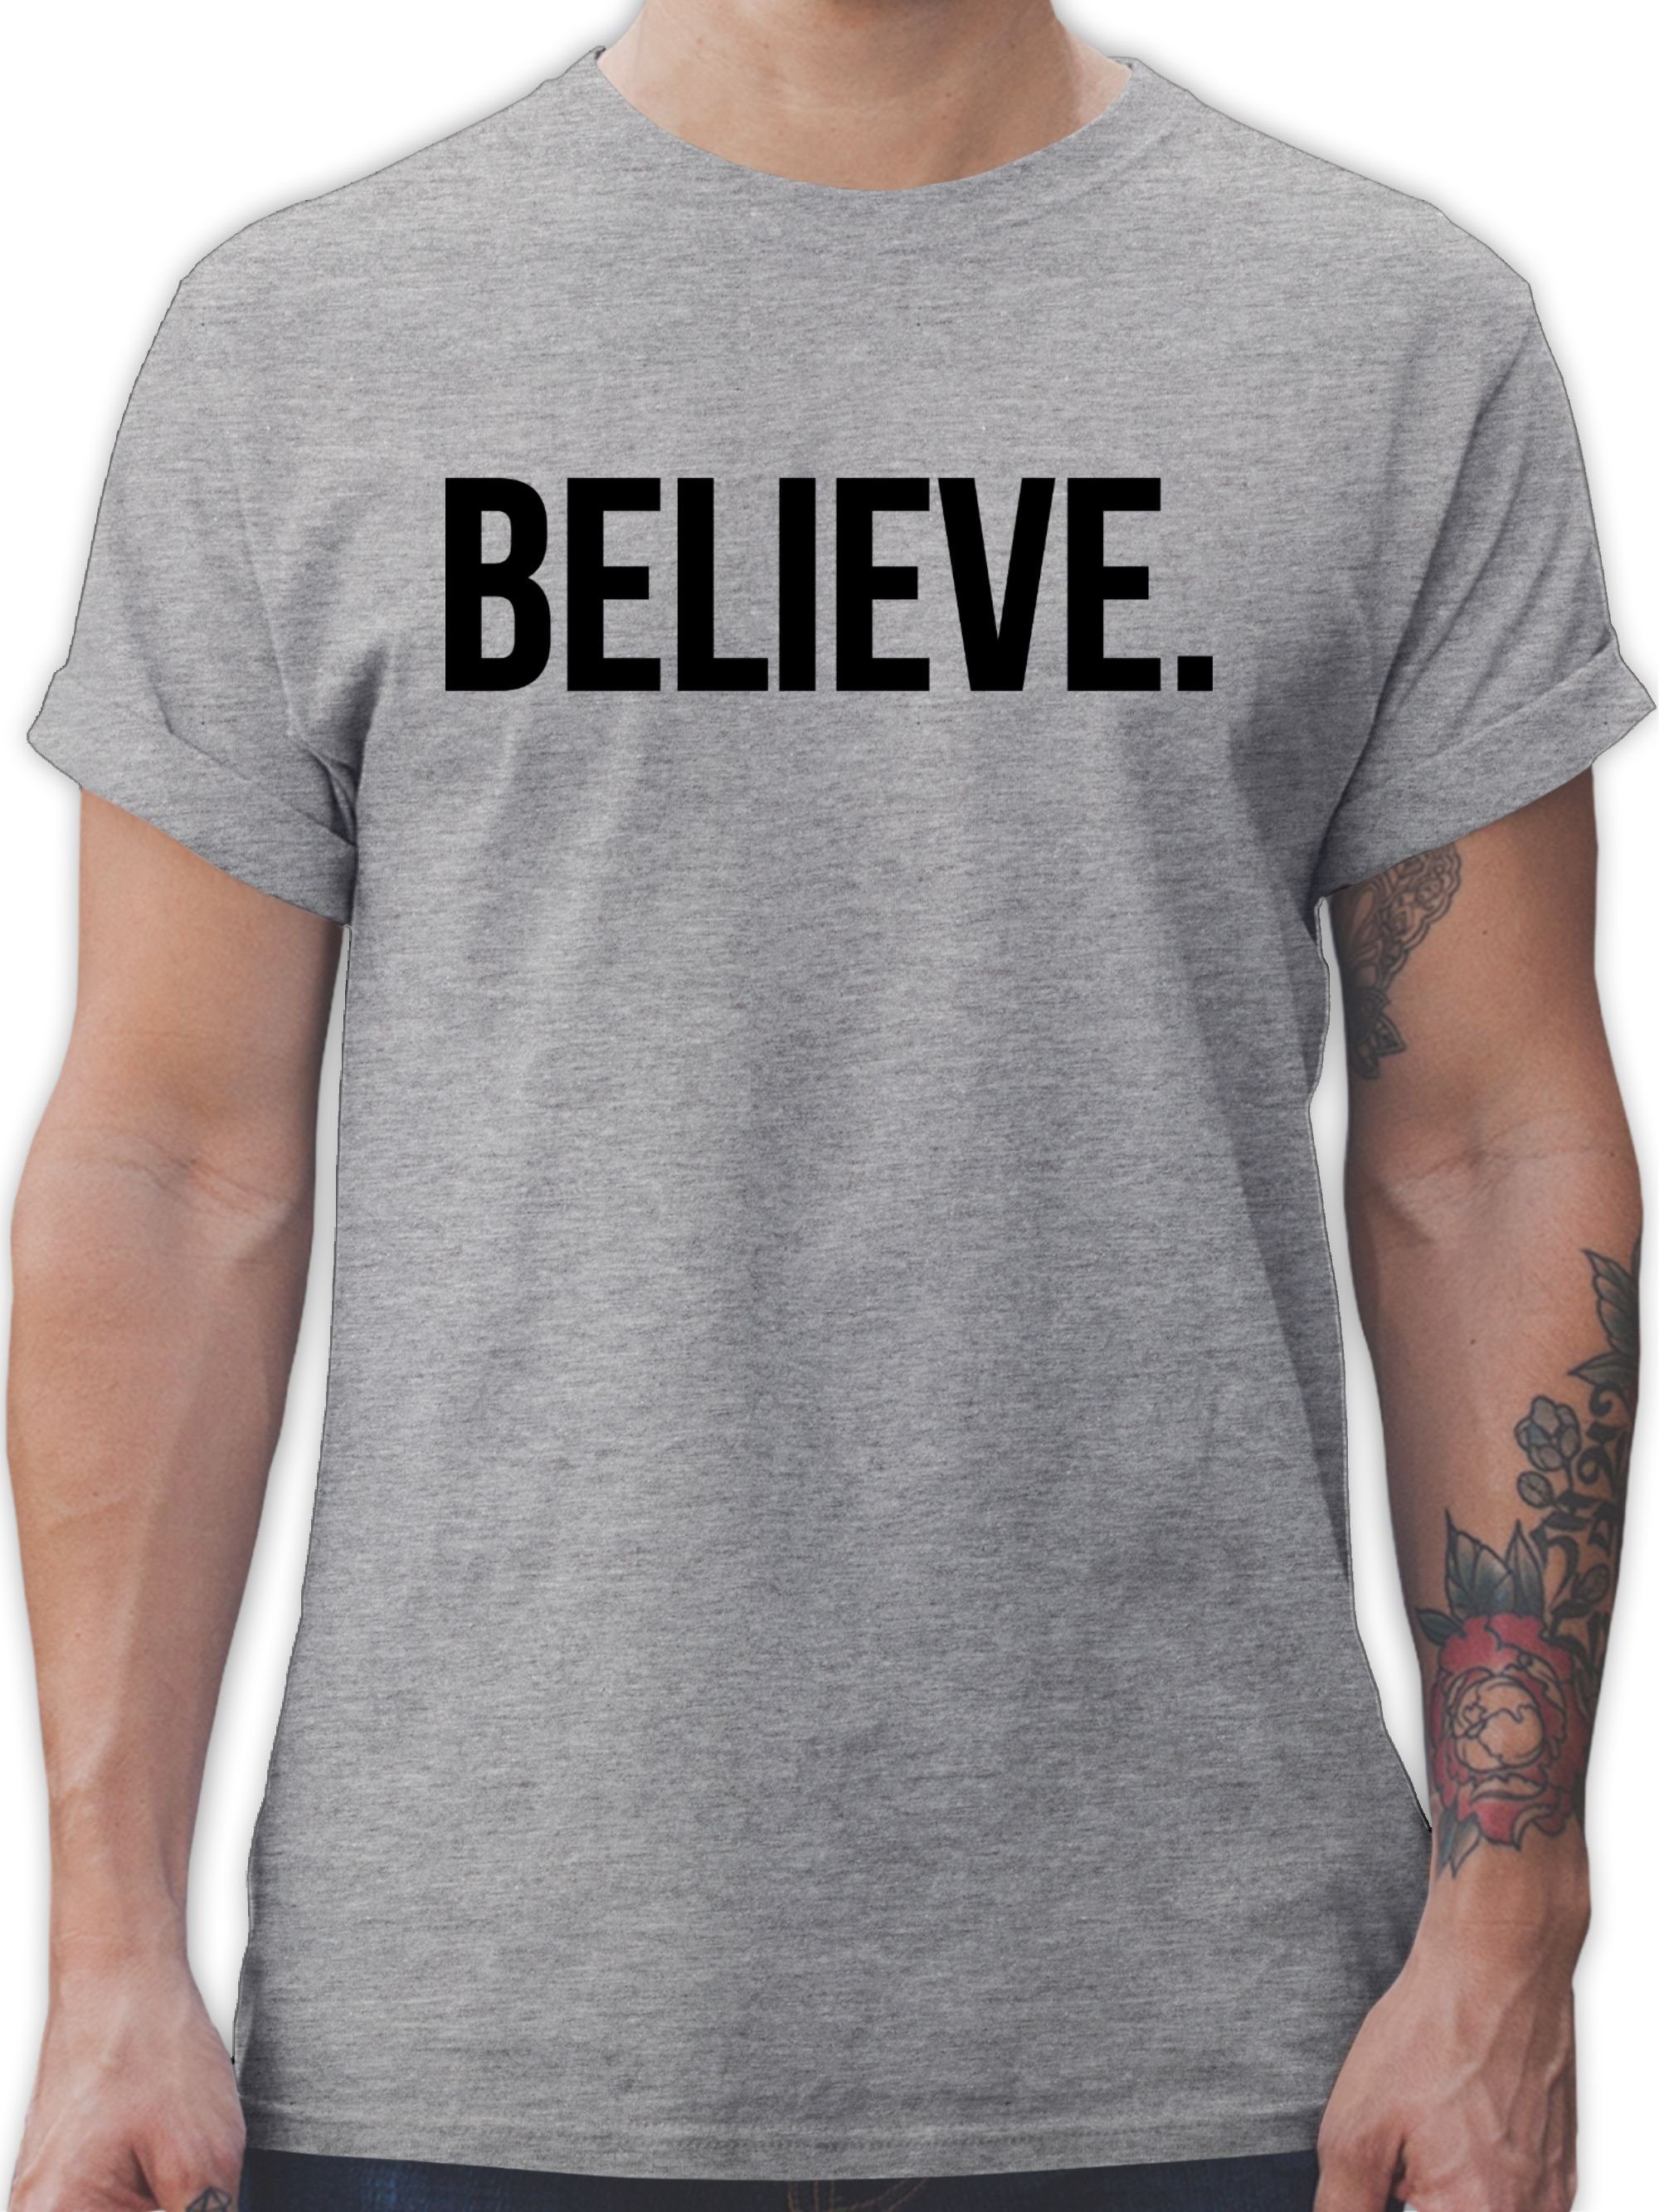 Shirtracer T-Shirt Believe Glauben Statement Glaube Religion 2 Grau meliert